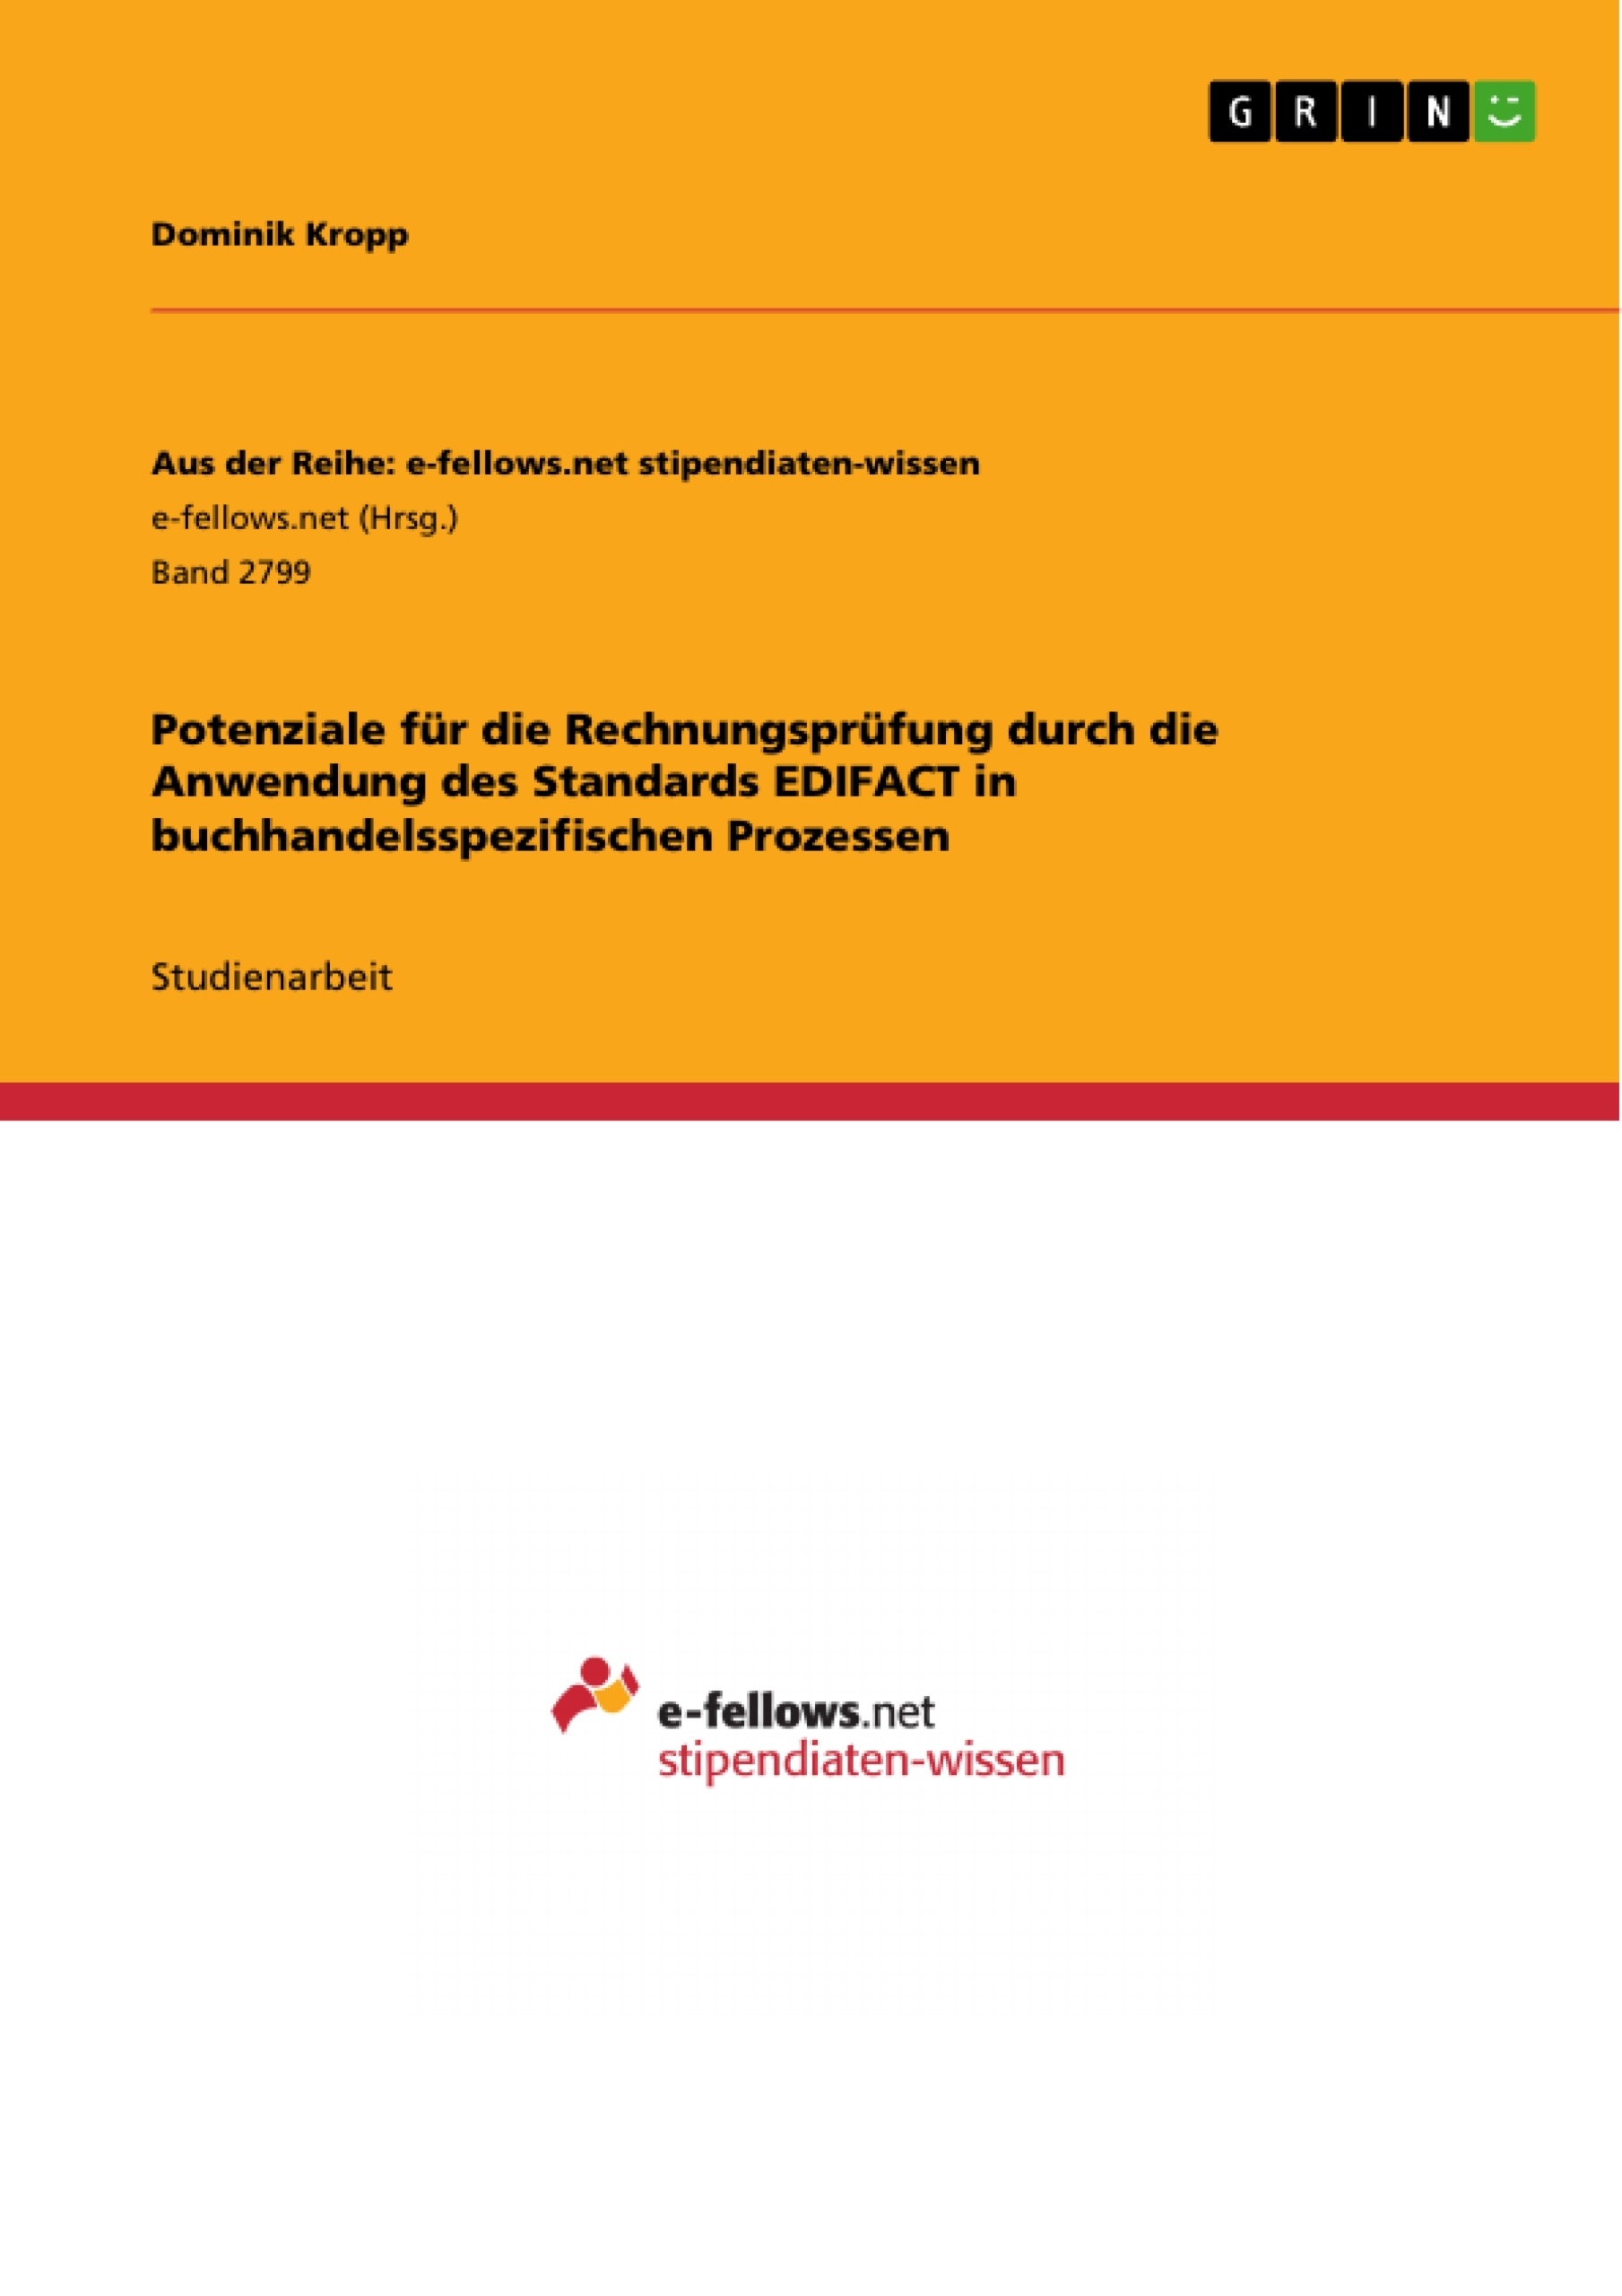 Title: Potenziale für die Rechnungsprüfung durch die Anwendung des Standards EDIFACT in buchhandelsspezifischen Prozessen